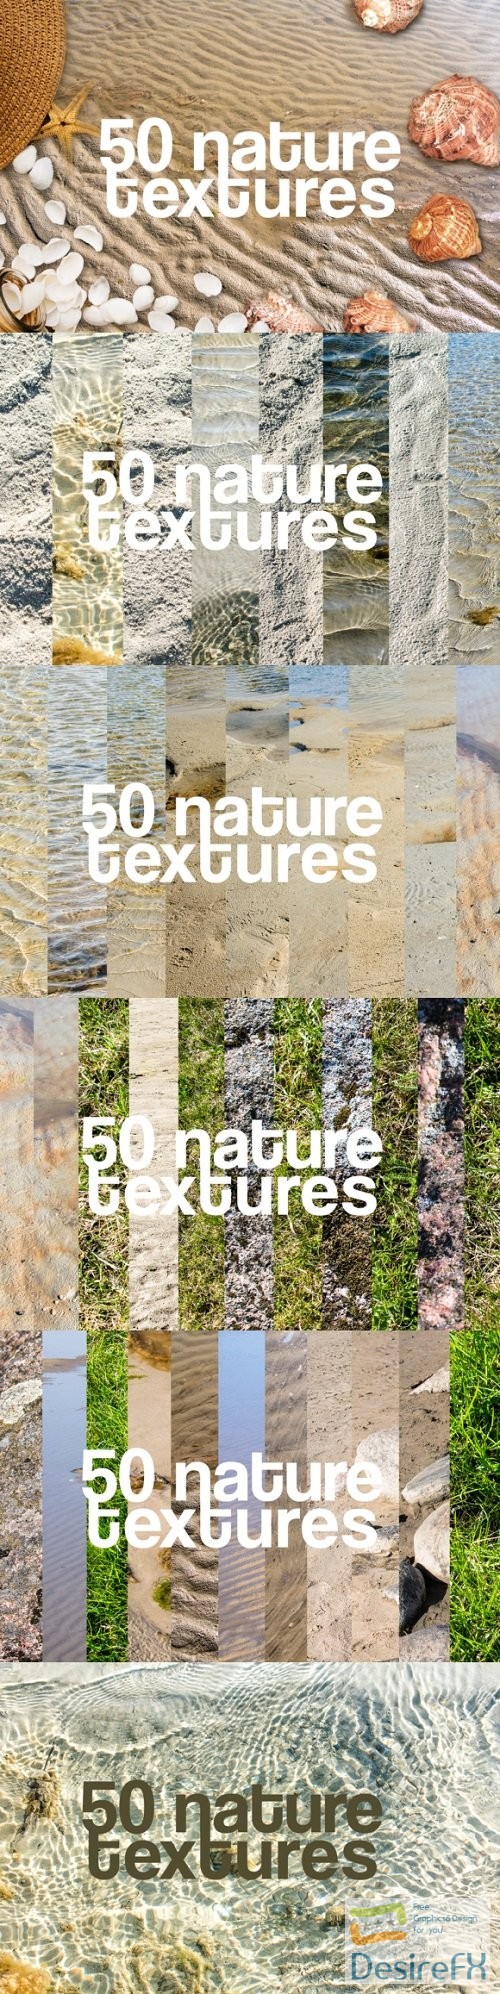 50 Nature Textures Beach Grass Rocks Sea